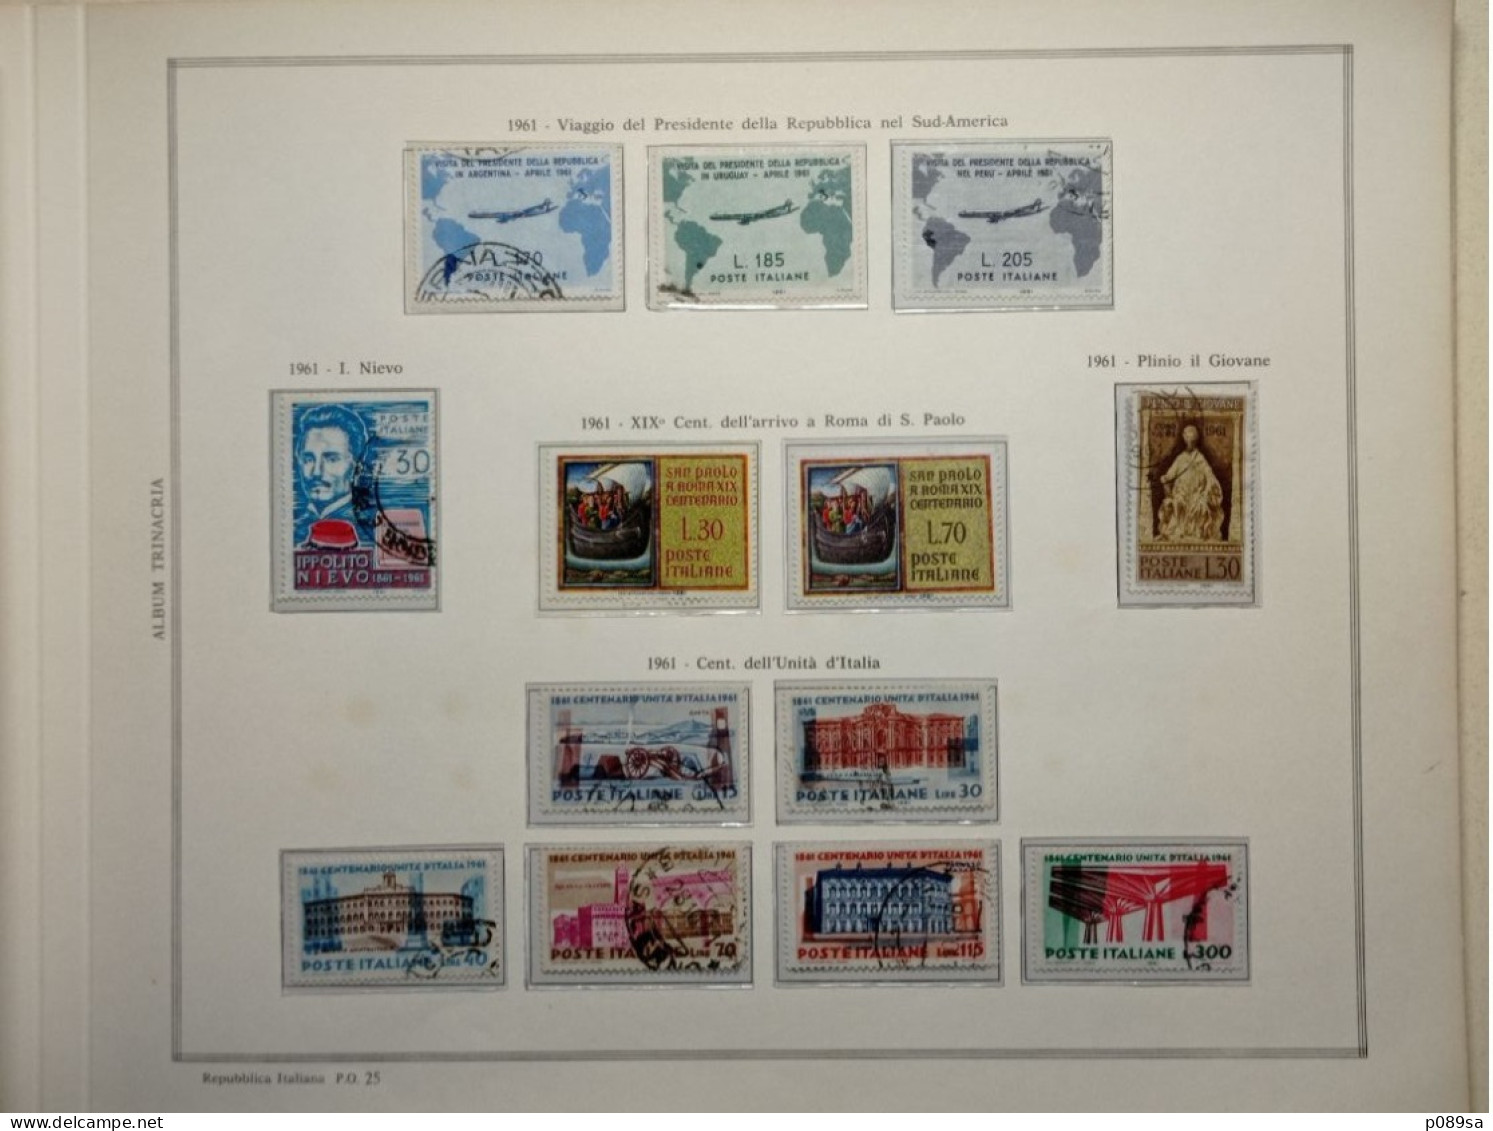 Collezione di francobolli usati della Repubblica Italiana